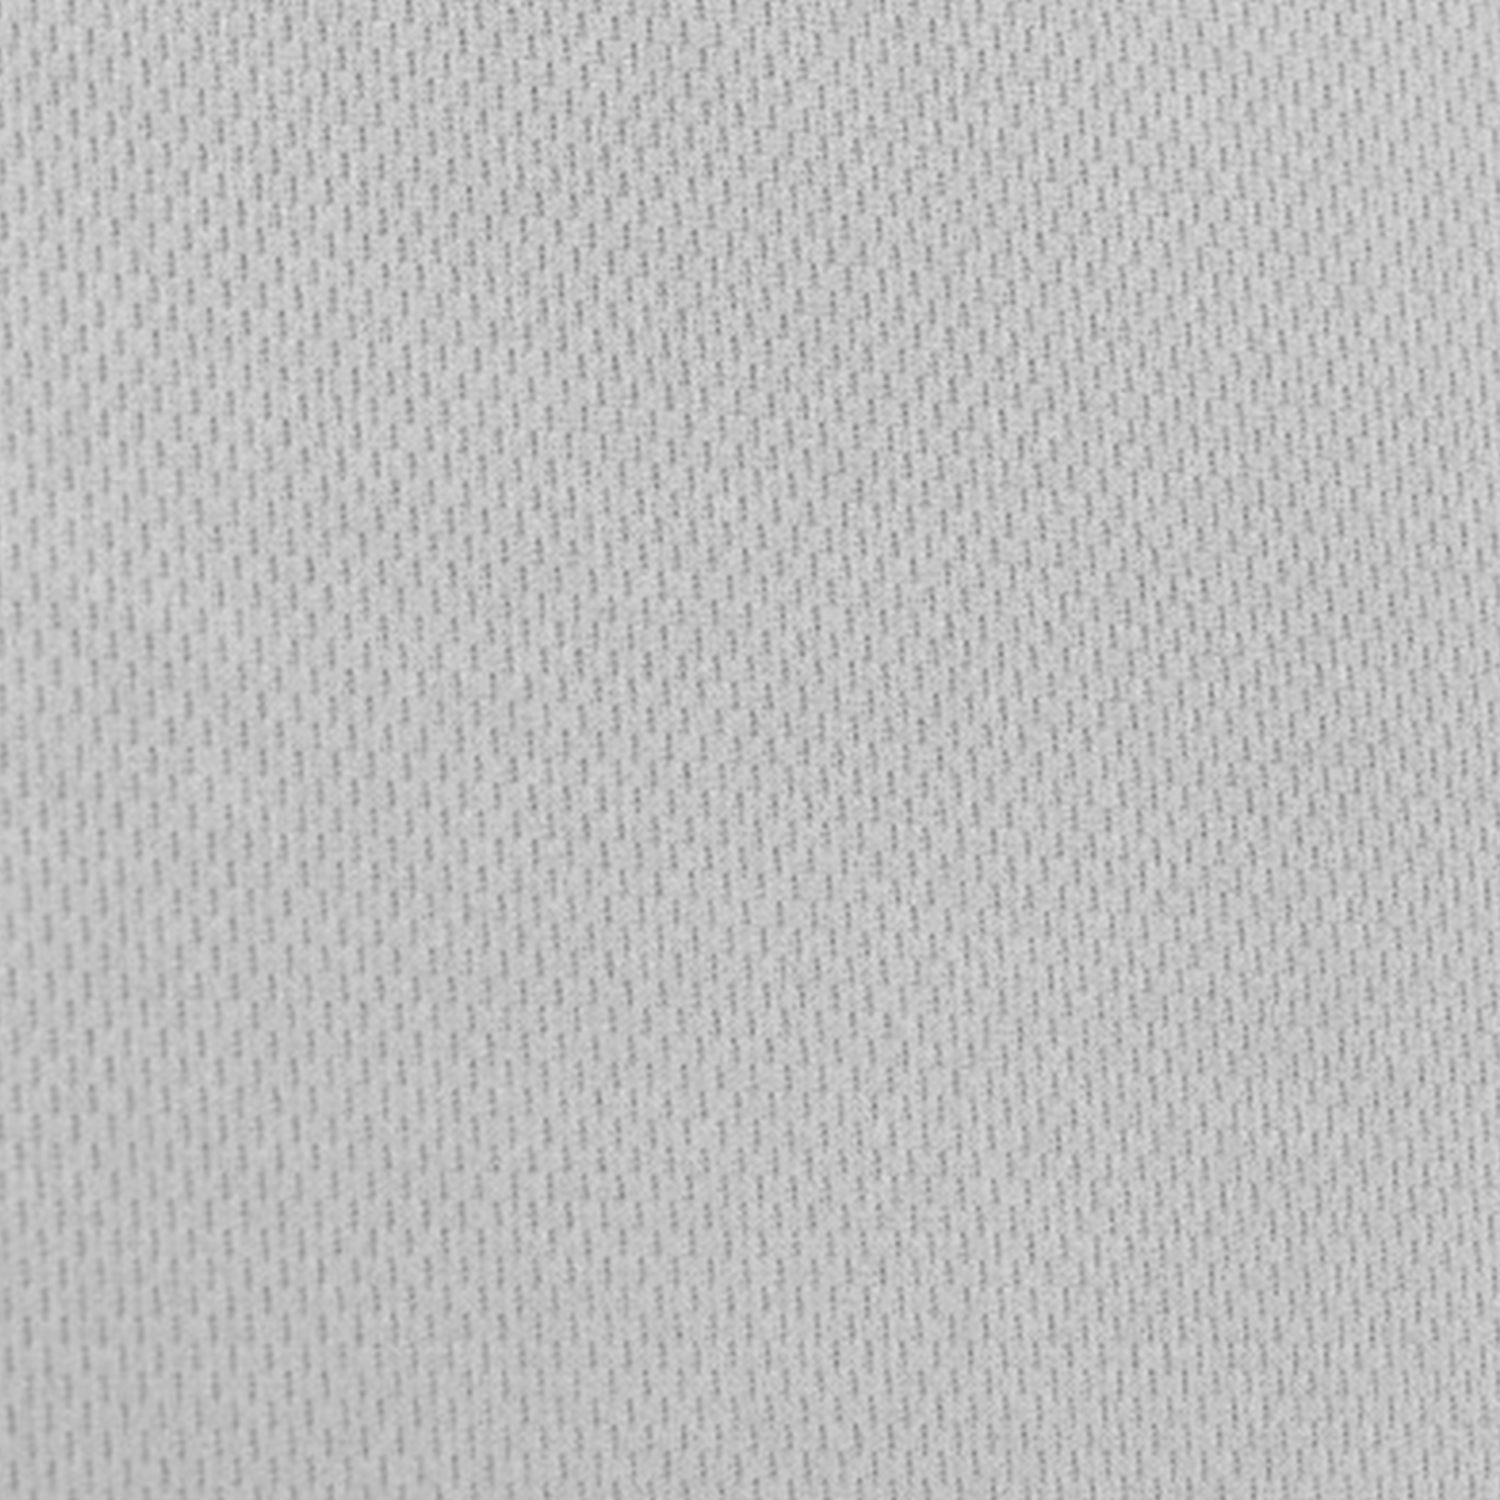 gray mesh fabric